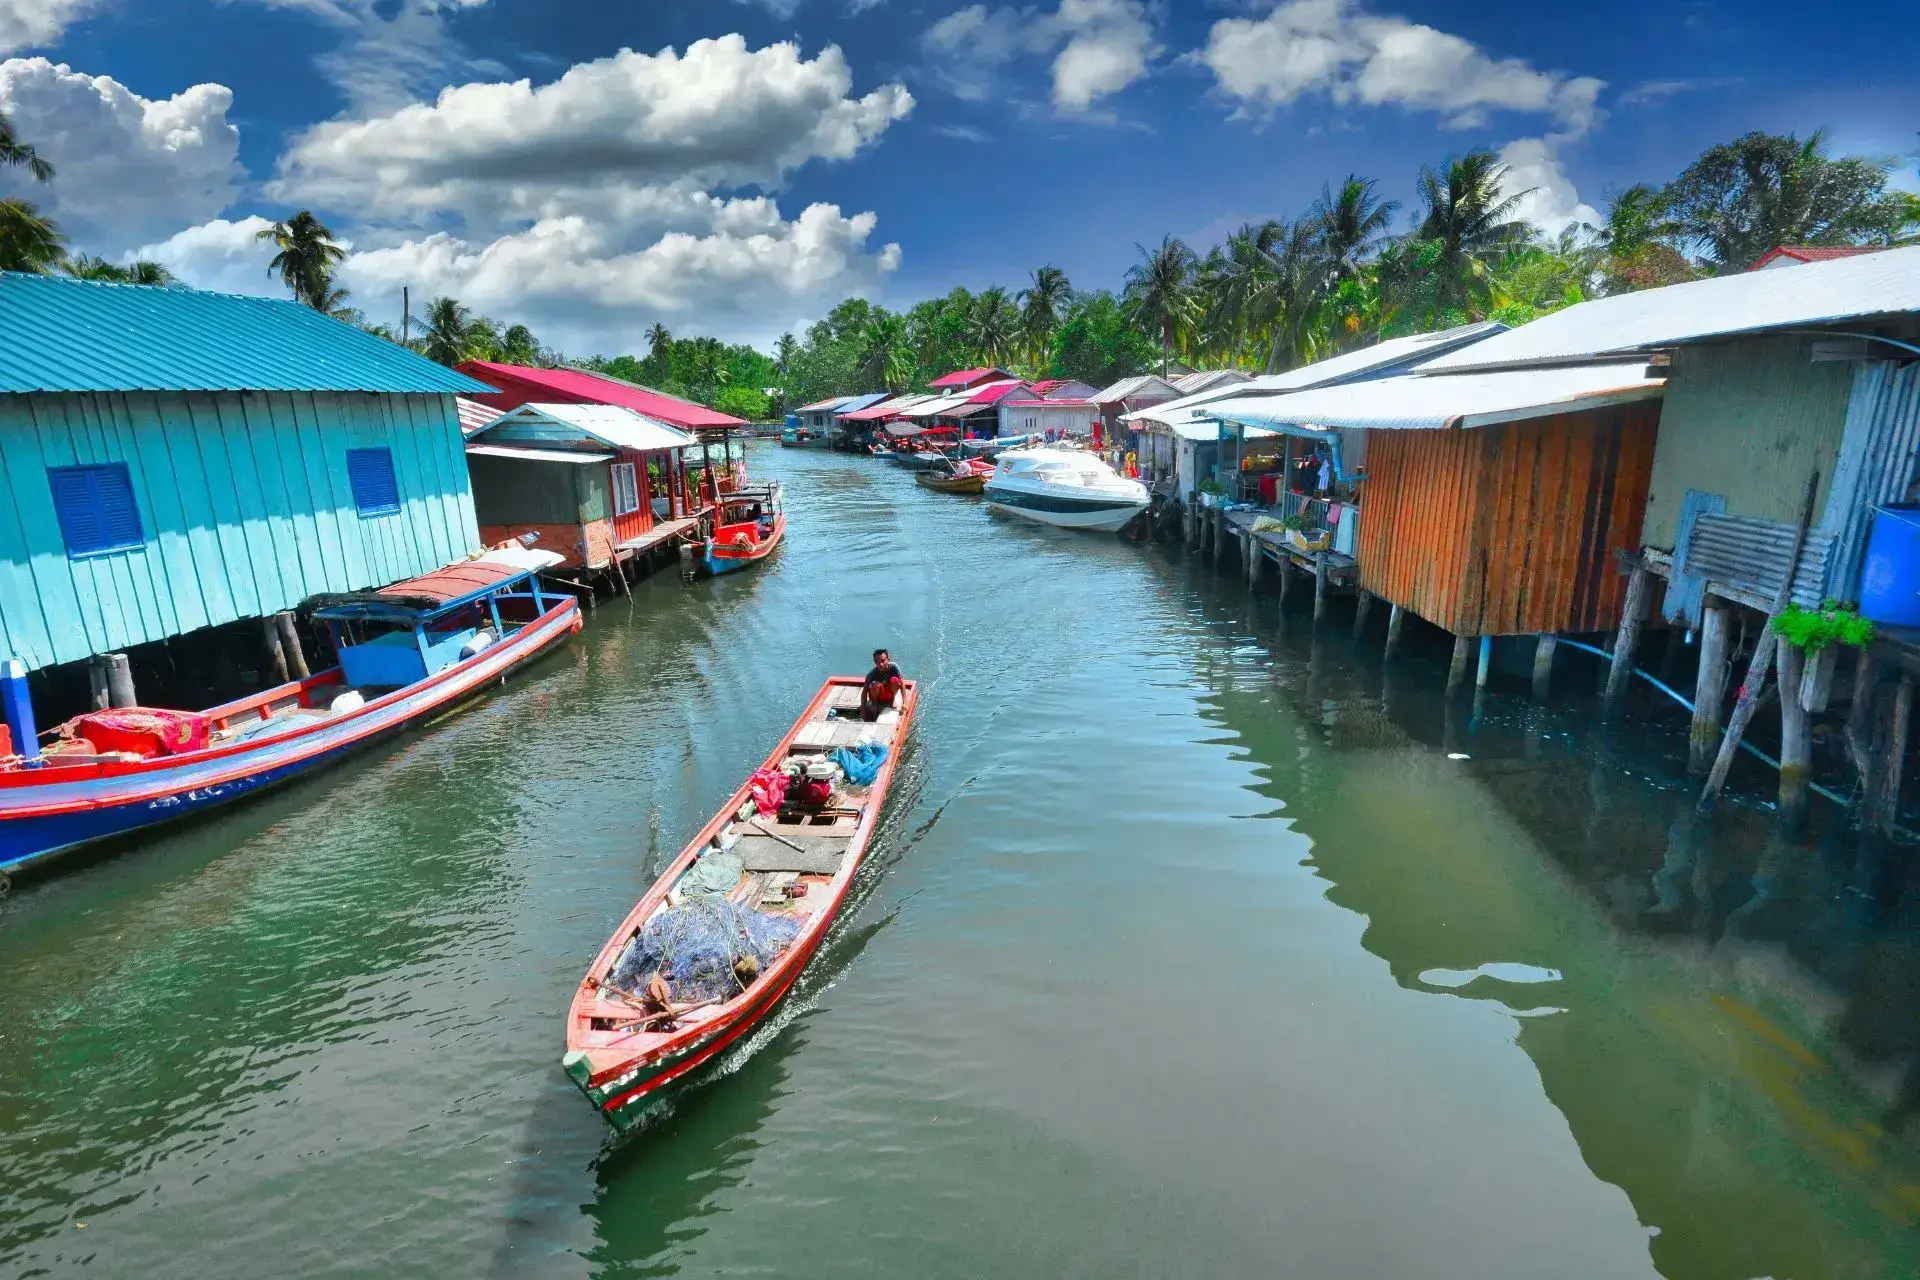 Casas de colores sobre el agua y una canoa navegando por el medio del canal